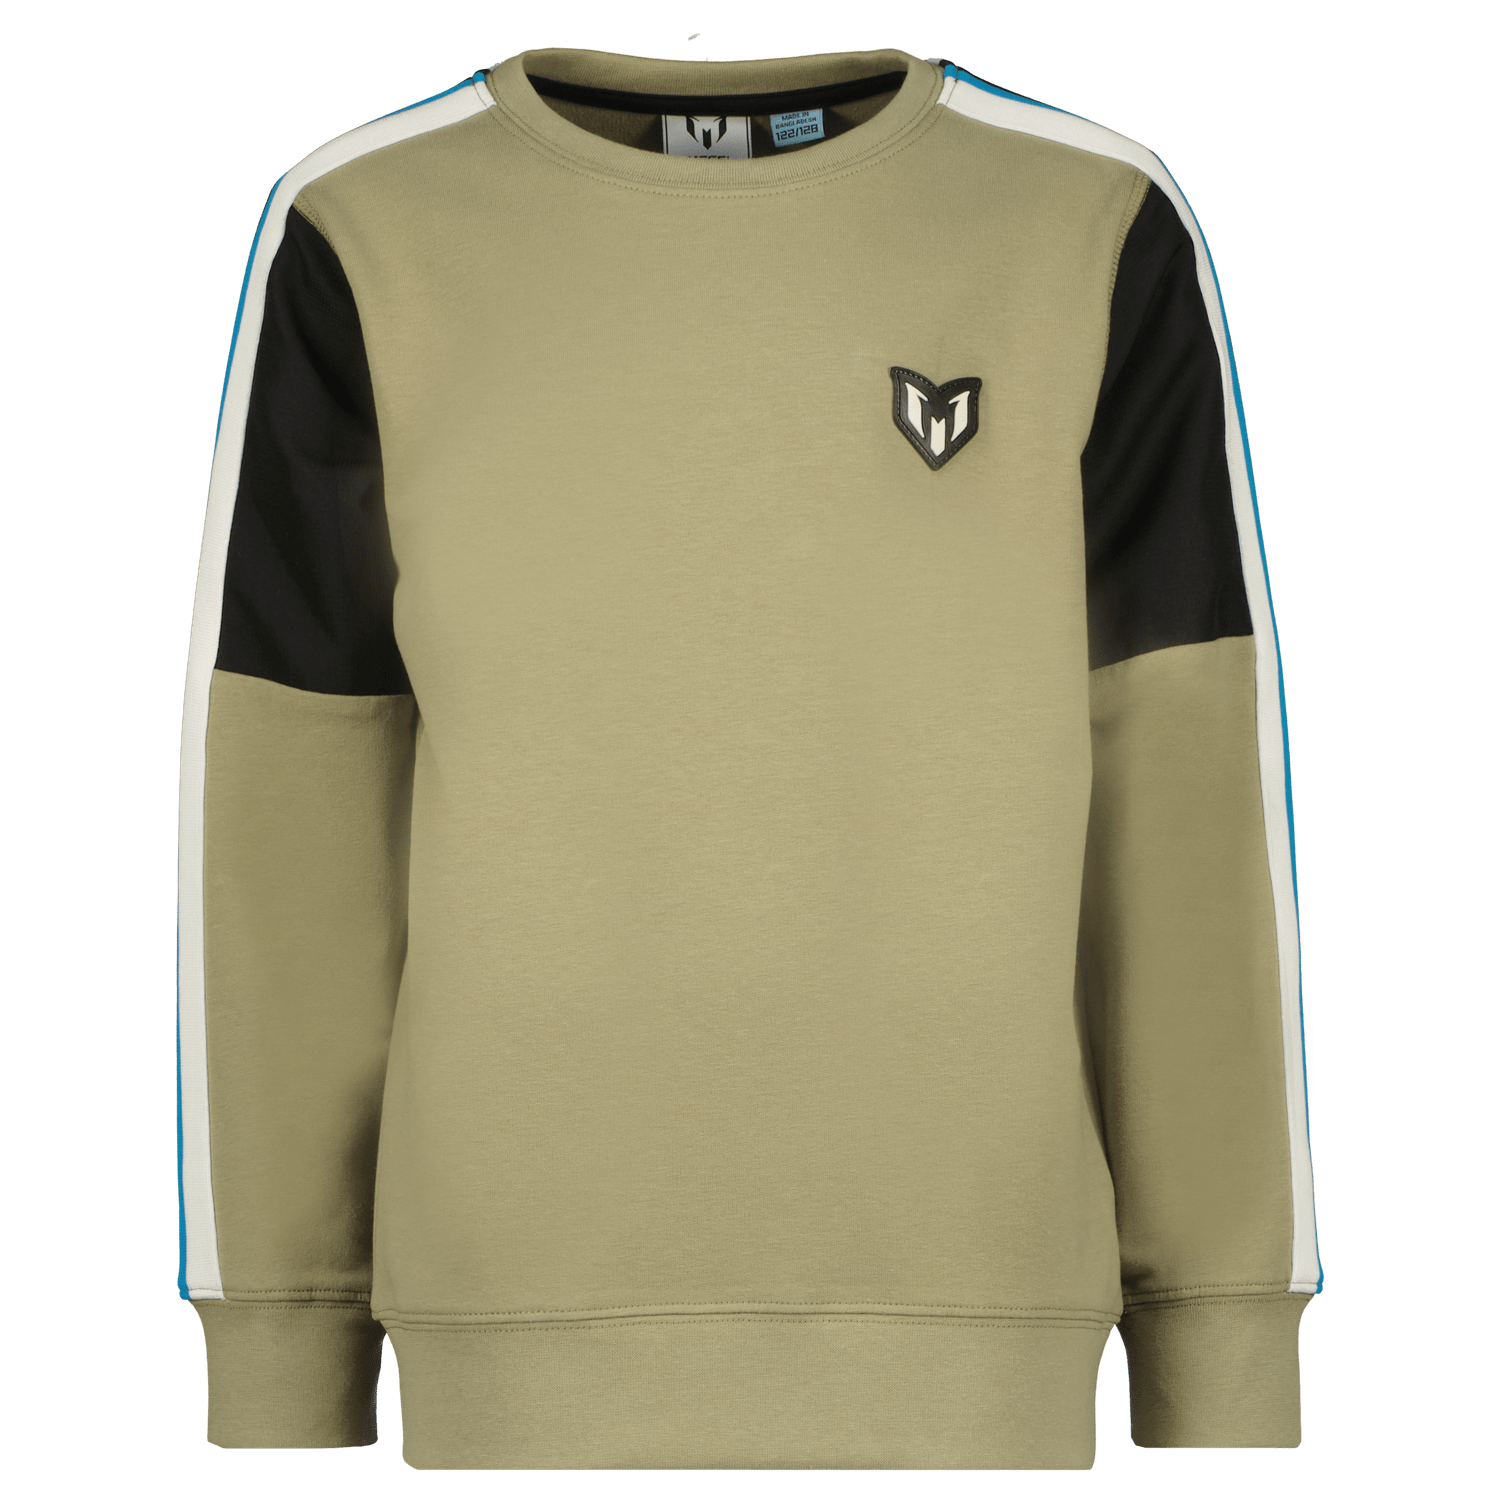 VINGINO x Messi sweater Neyen licht olijfgroen Meerkleurig 110 116